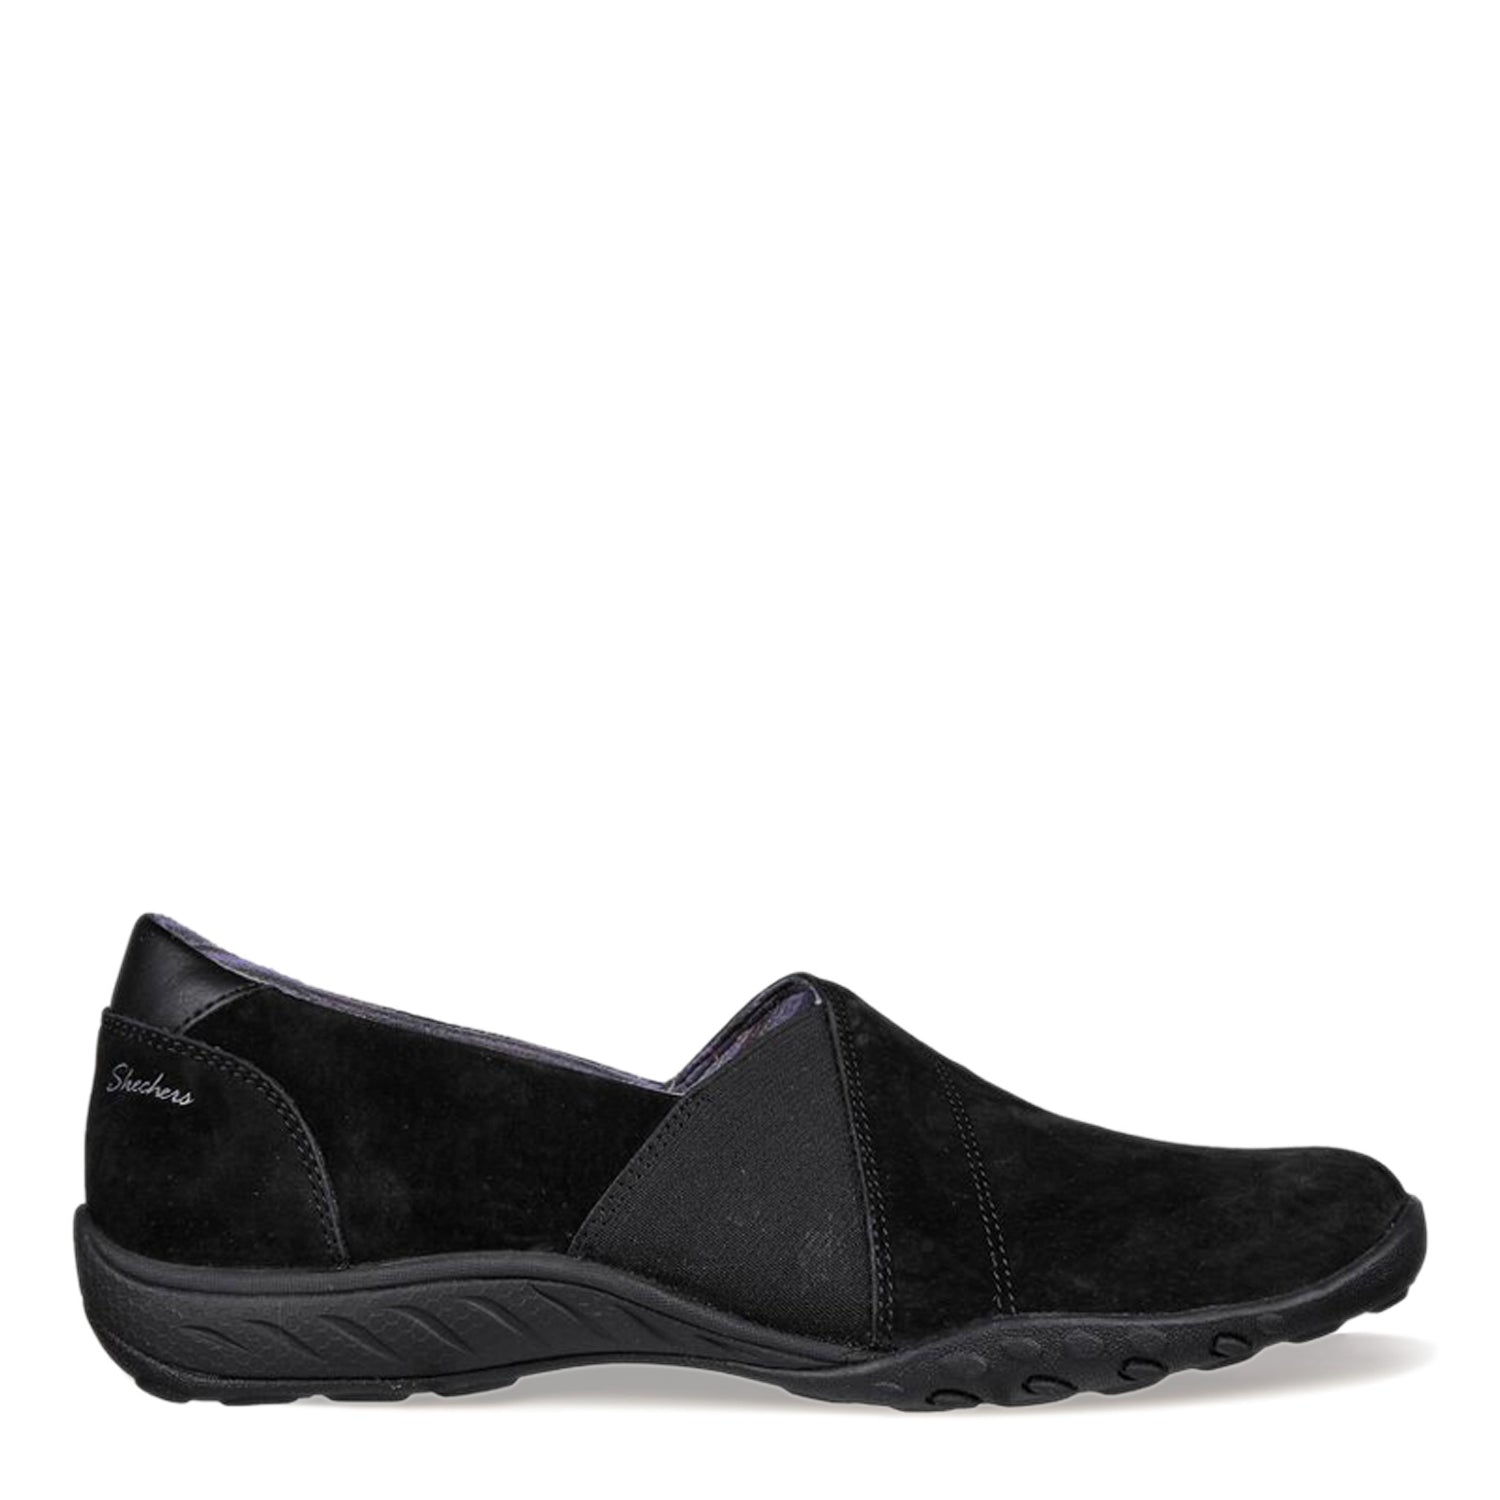 Peltz Shoes  Women's Skechers Relaxed Fit: Breathe-Easy - Kindred Slip-On - Wide Width Black/Black 100377W-BBK